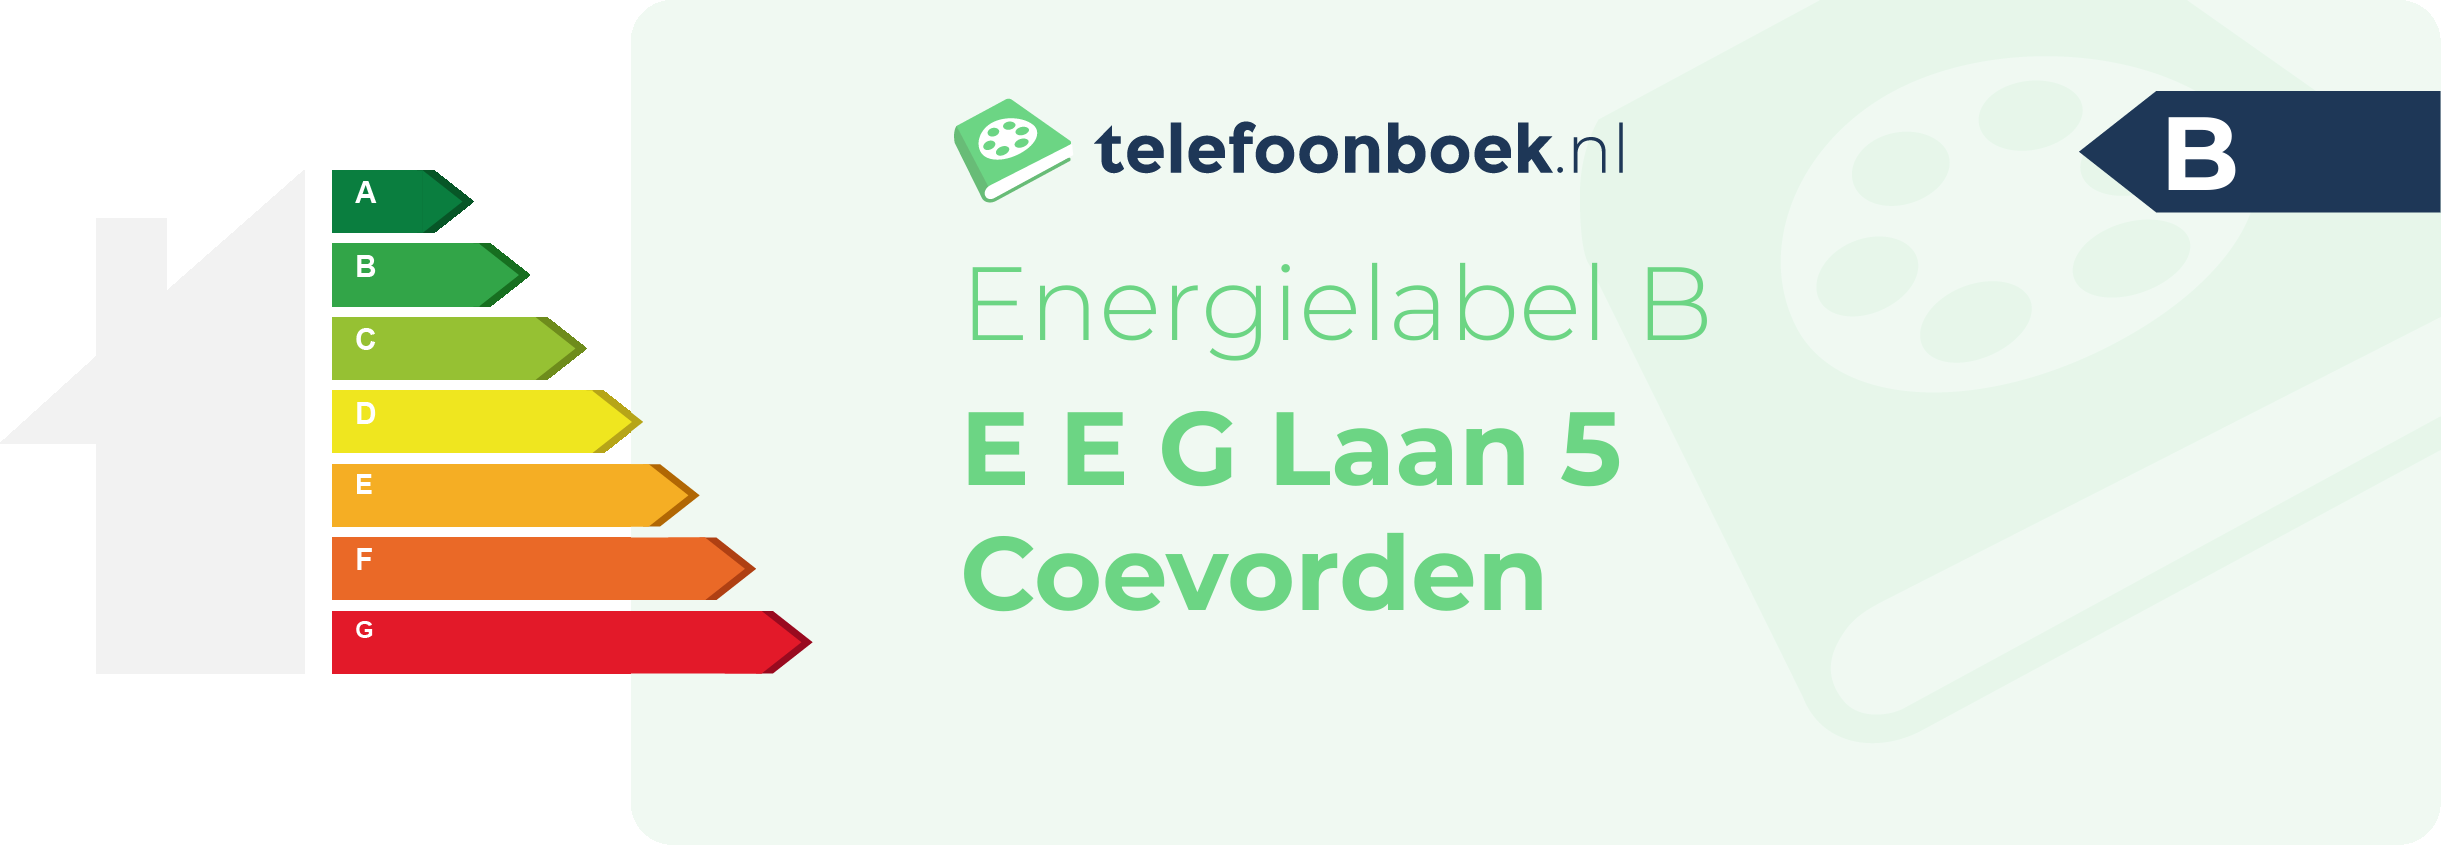 Energielabel E E G Laan 5 Coevorden